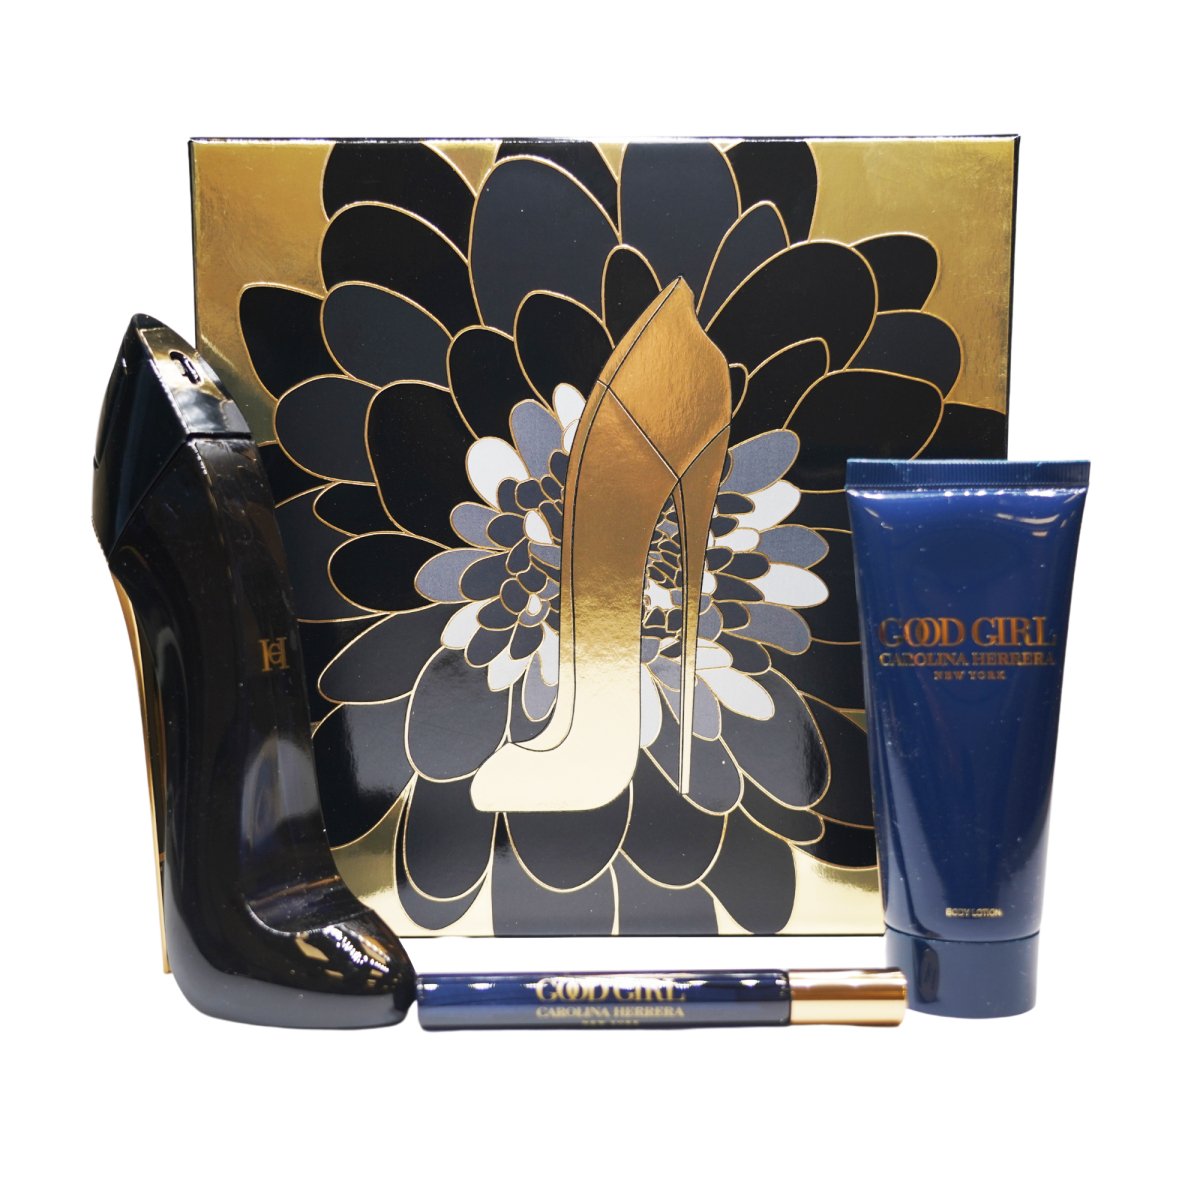 Carolina Herrera Good Girl Eau de Parfum 80 ml Gift Set - Perfume Headquarters - Carolina Herrera - Gift Set